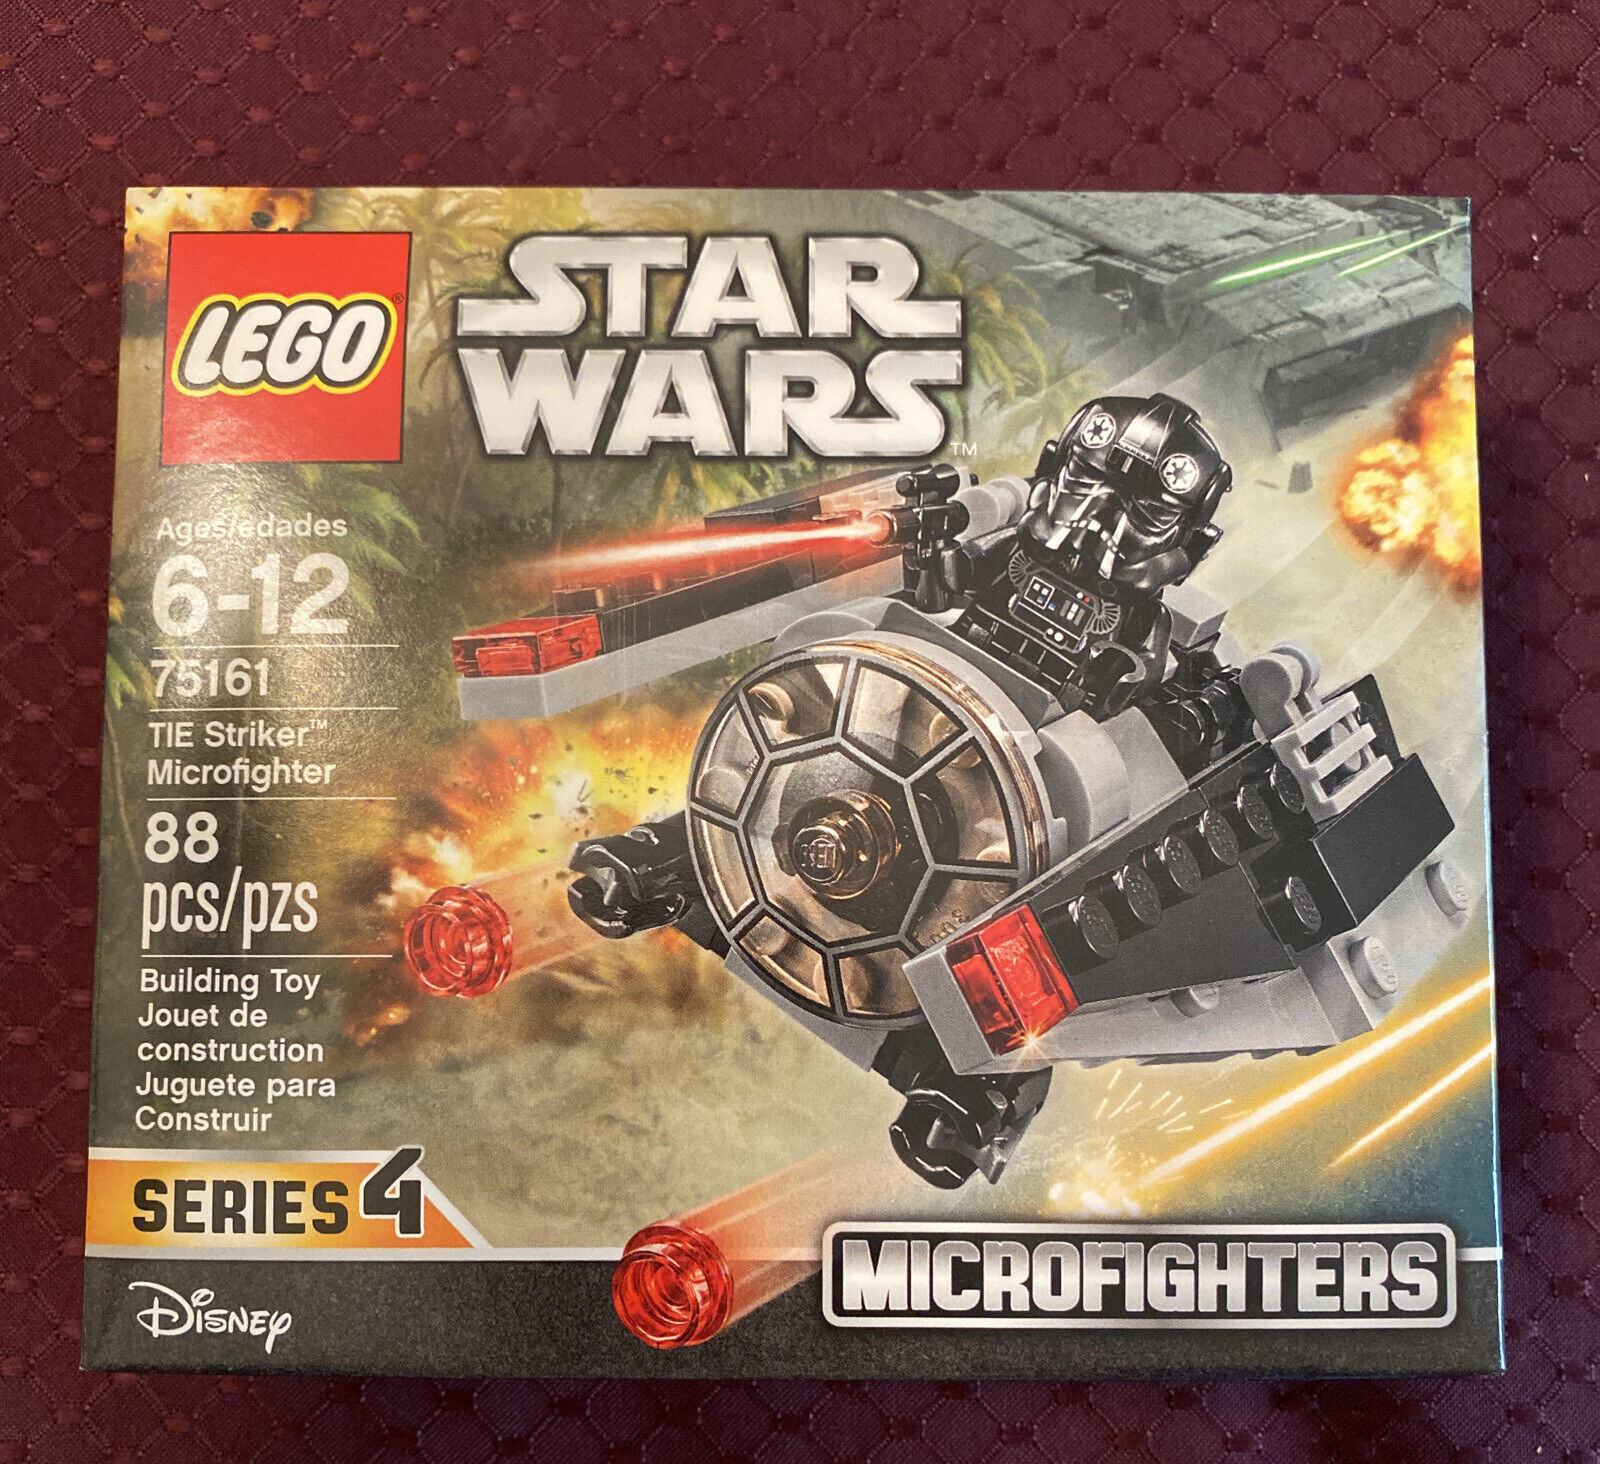 LEGO Star Wars Tie Striker Microfighter set 75161